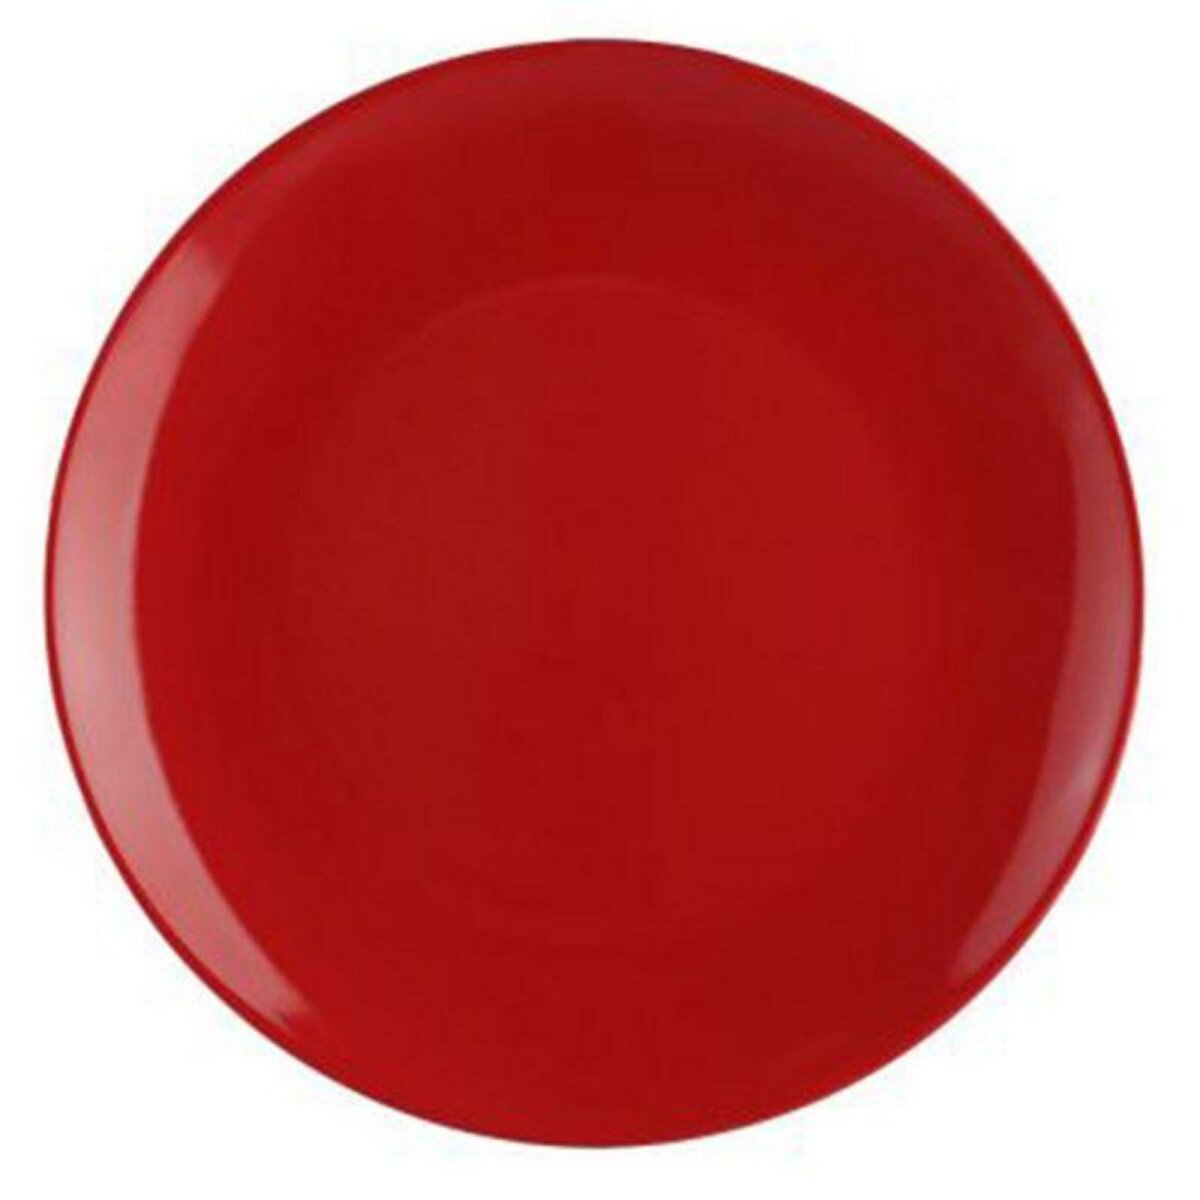  Lot de 6 Assiettes Plates  Colorama  26cm Rouge